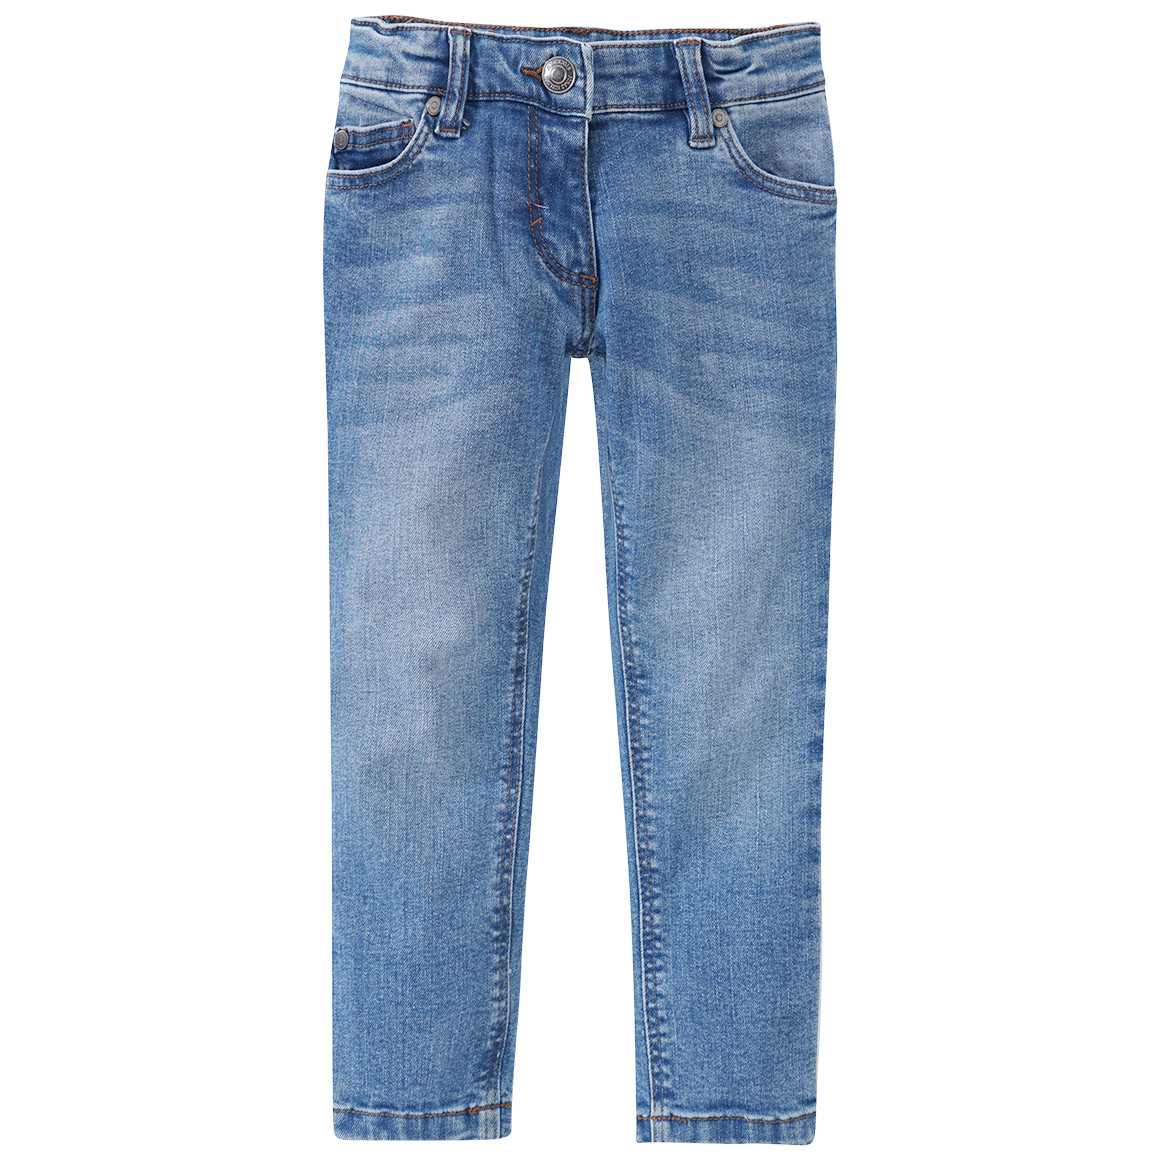 Mädchen Slim-Jeans mit verstellbarem Bund von Topolino